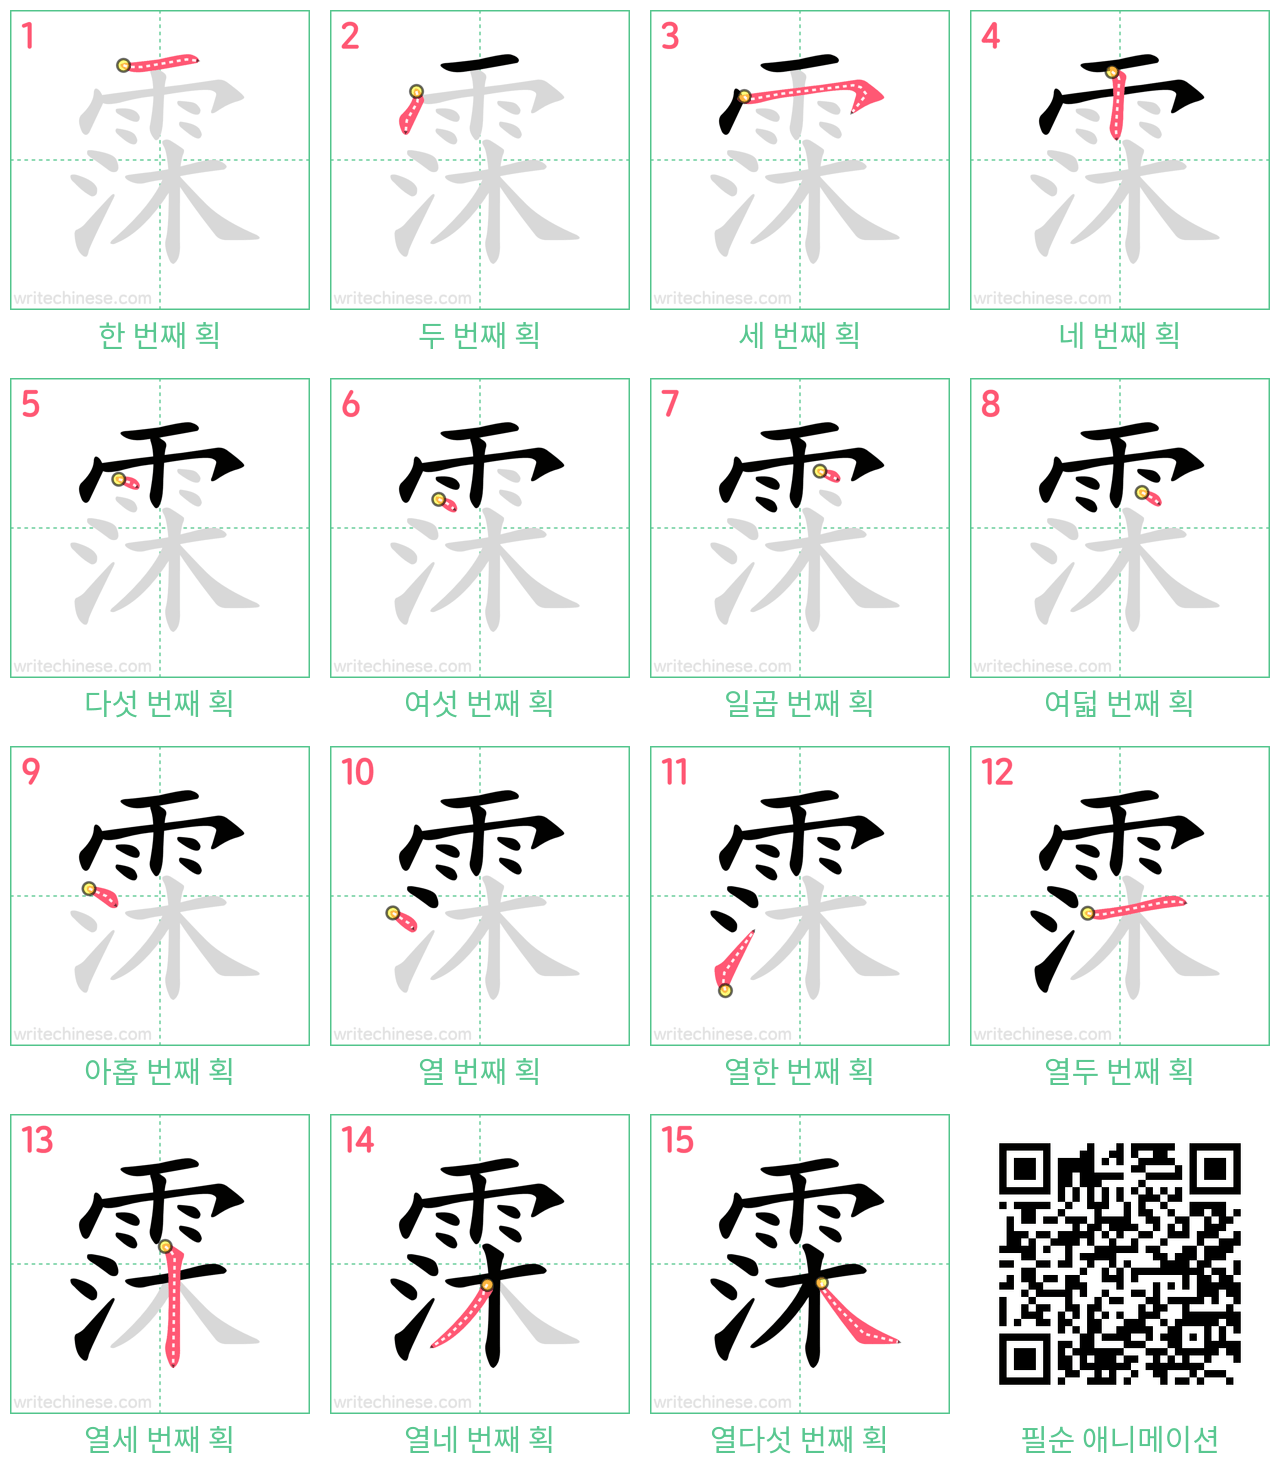 霂 step-by-step stroke order diagrams